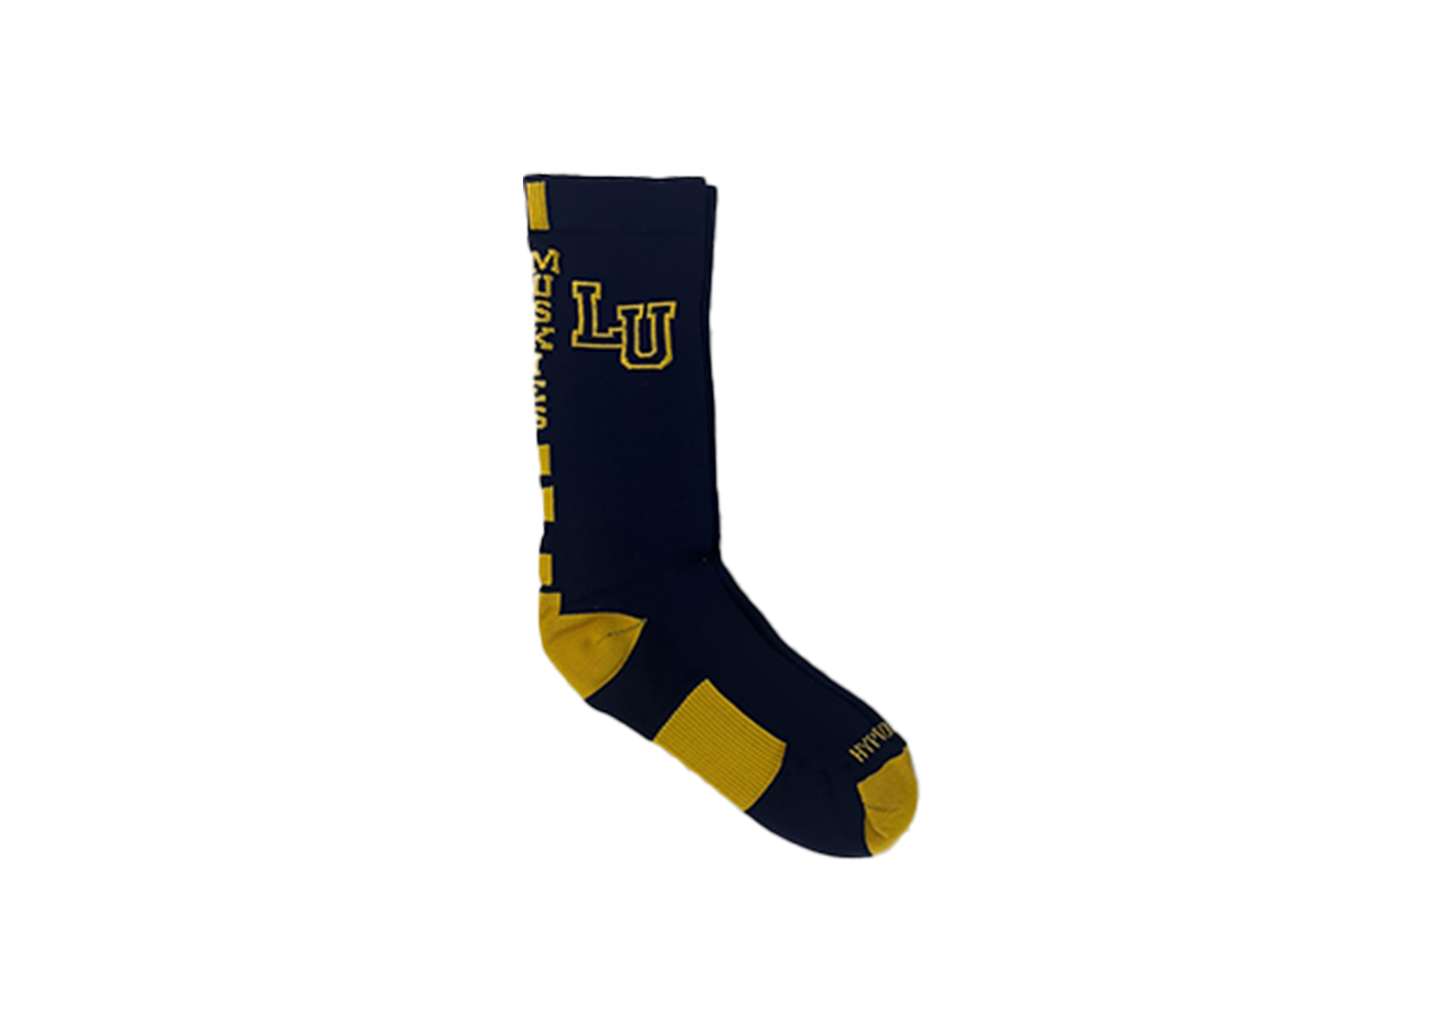 Hype Socks ON SALE 50% off